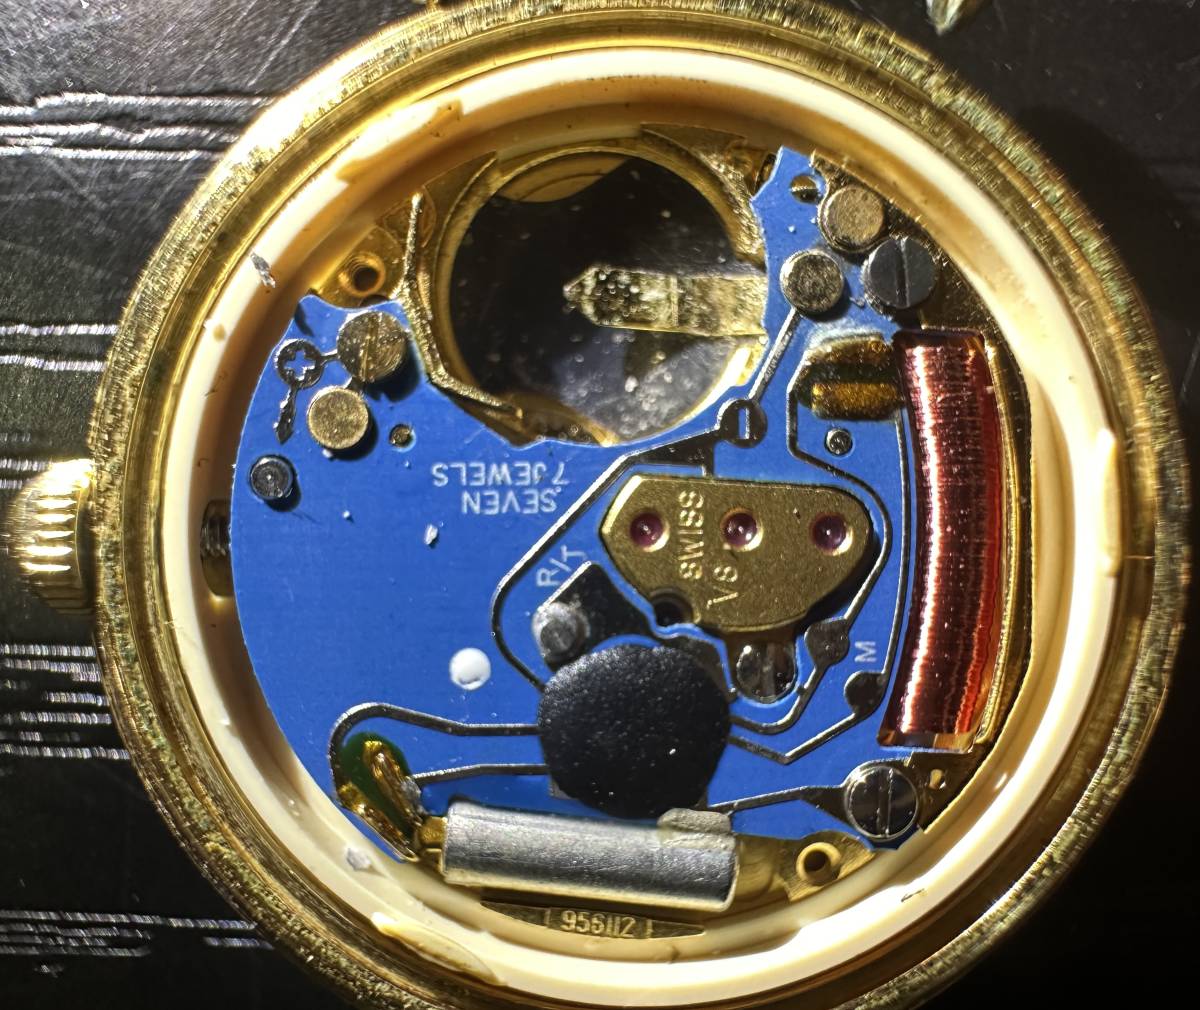 腕時計 Christian Dior ETA 956.112 SEVEN 7 JEWELS Waterresistant 3005 クリスチャンディオール 11.81g レディース 10D44WAの画像4